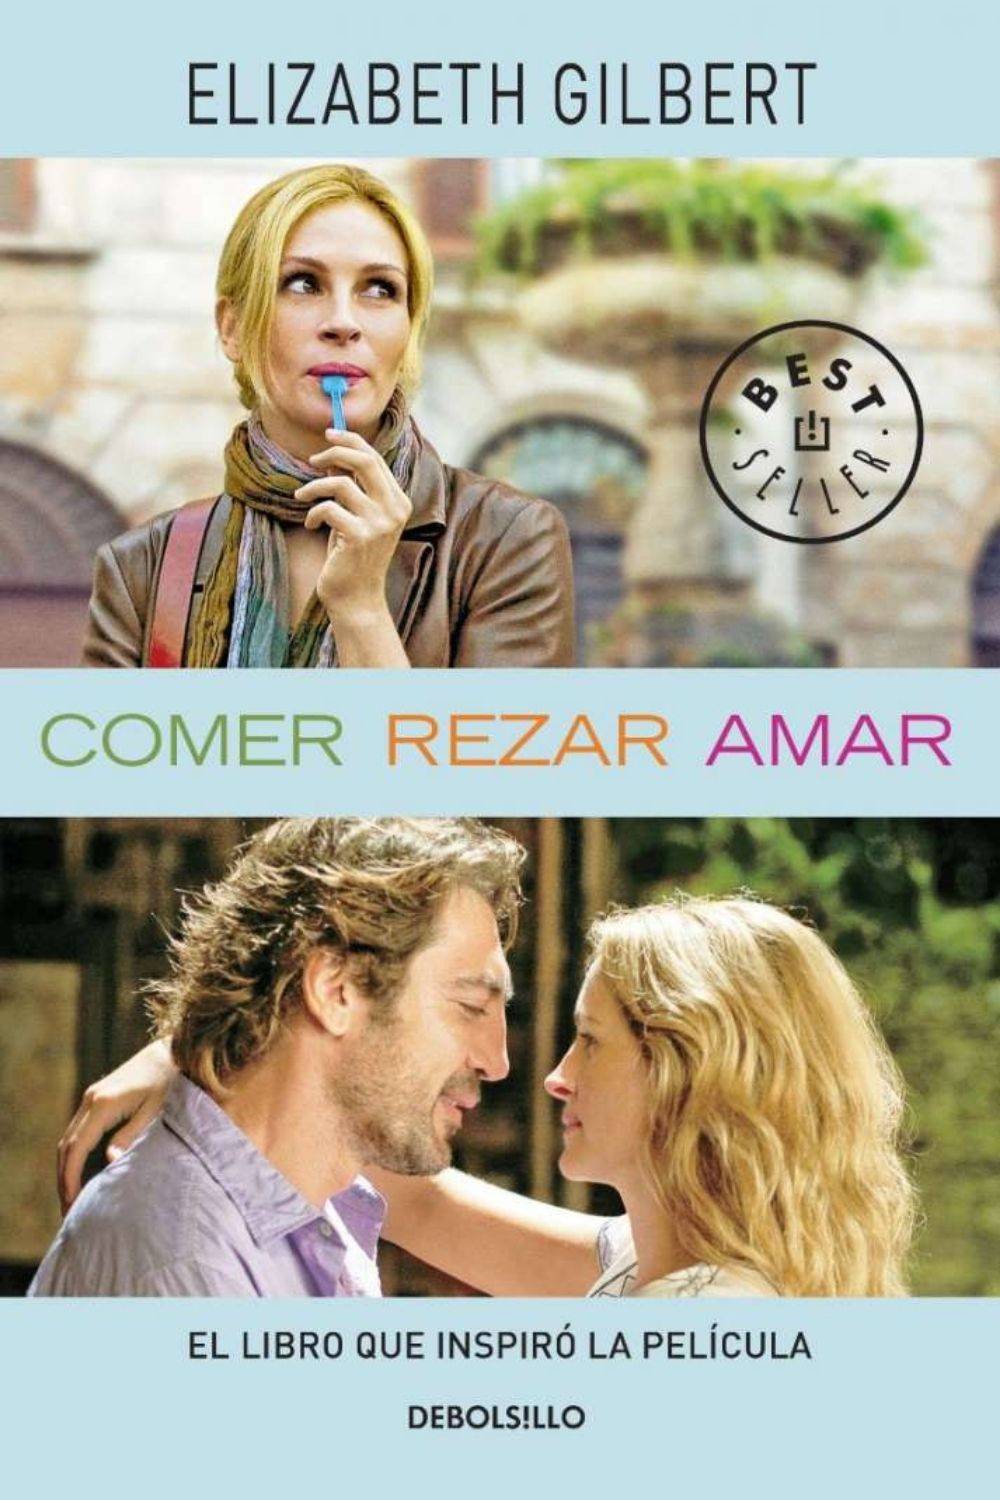 Comedias románticas - Come, reza, ama (2010)